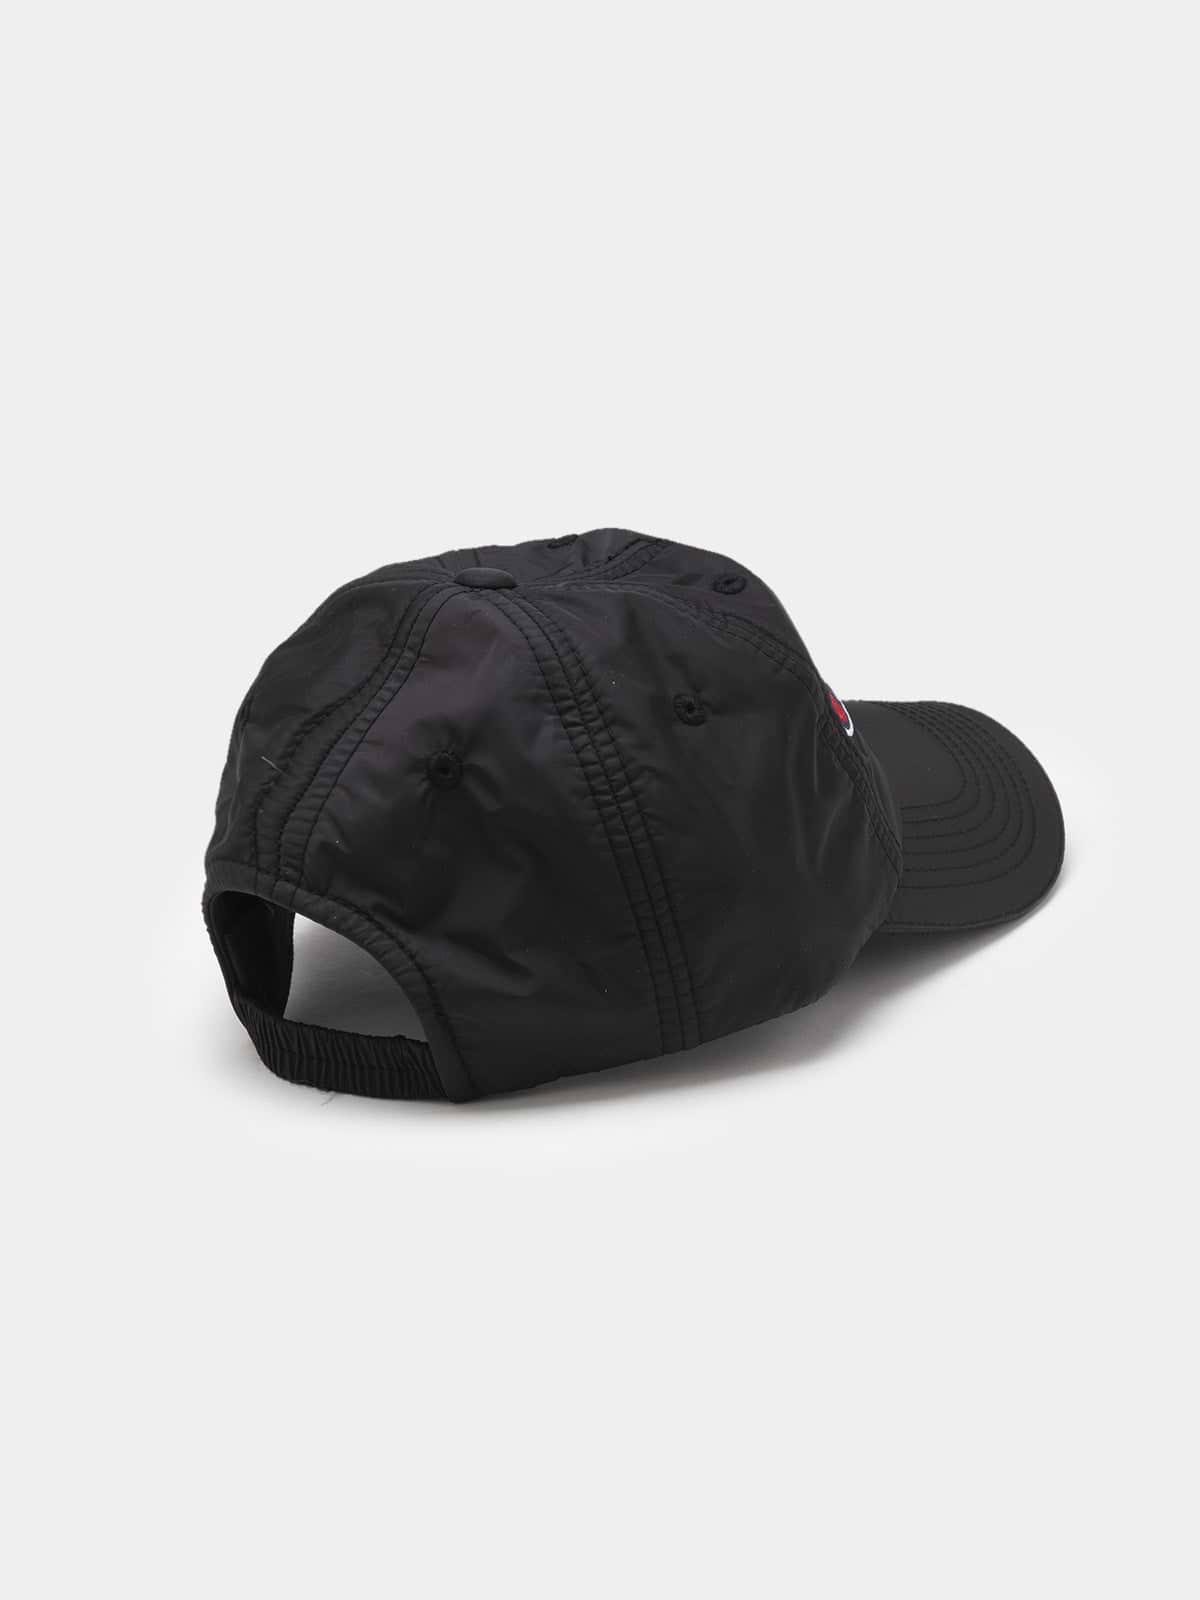 כובע בייסבול בגימור ניילון עם לוגו- Champion|צ'מפיון